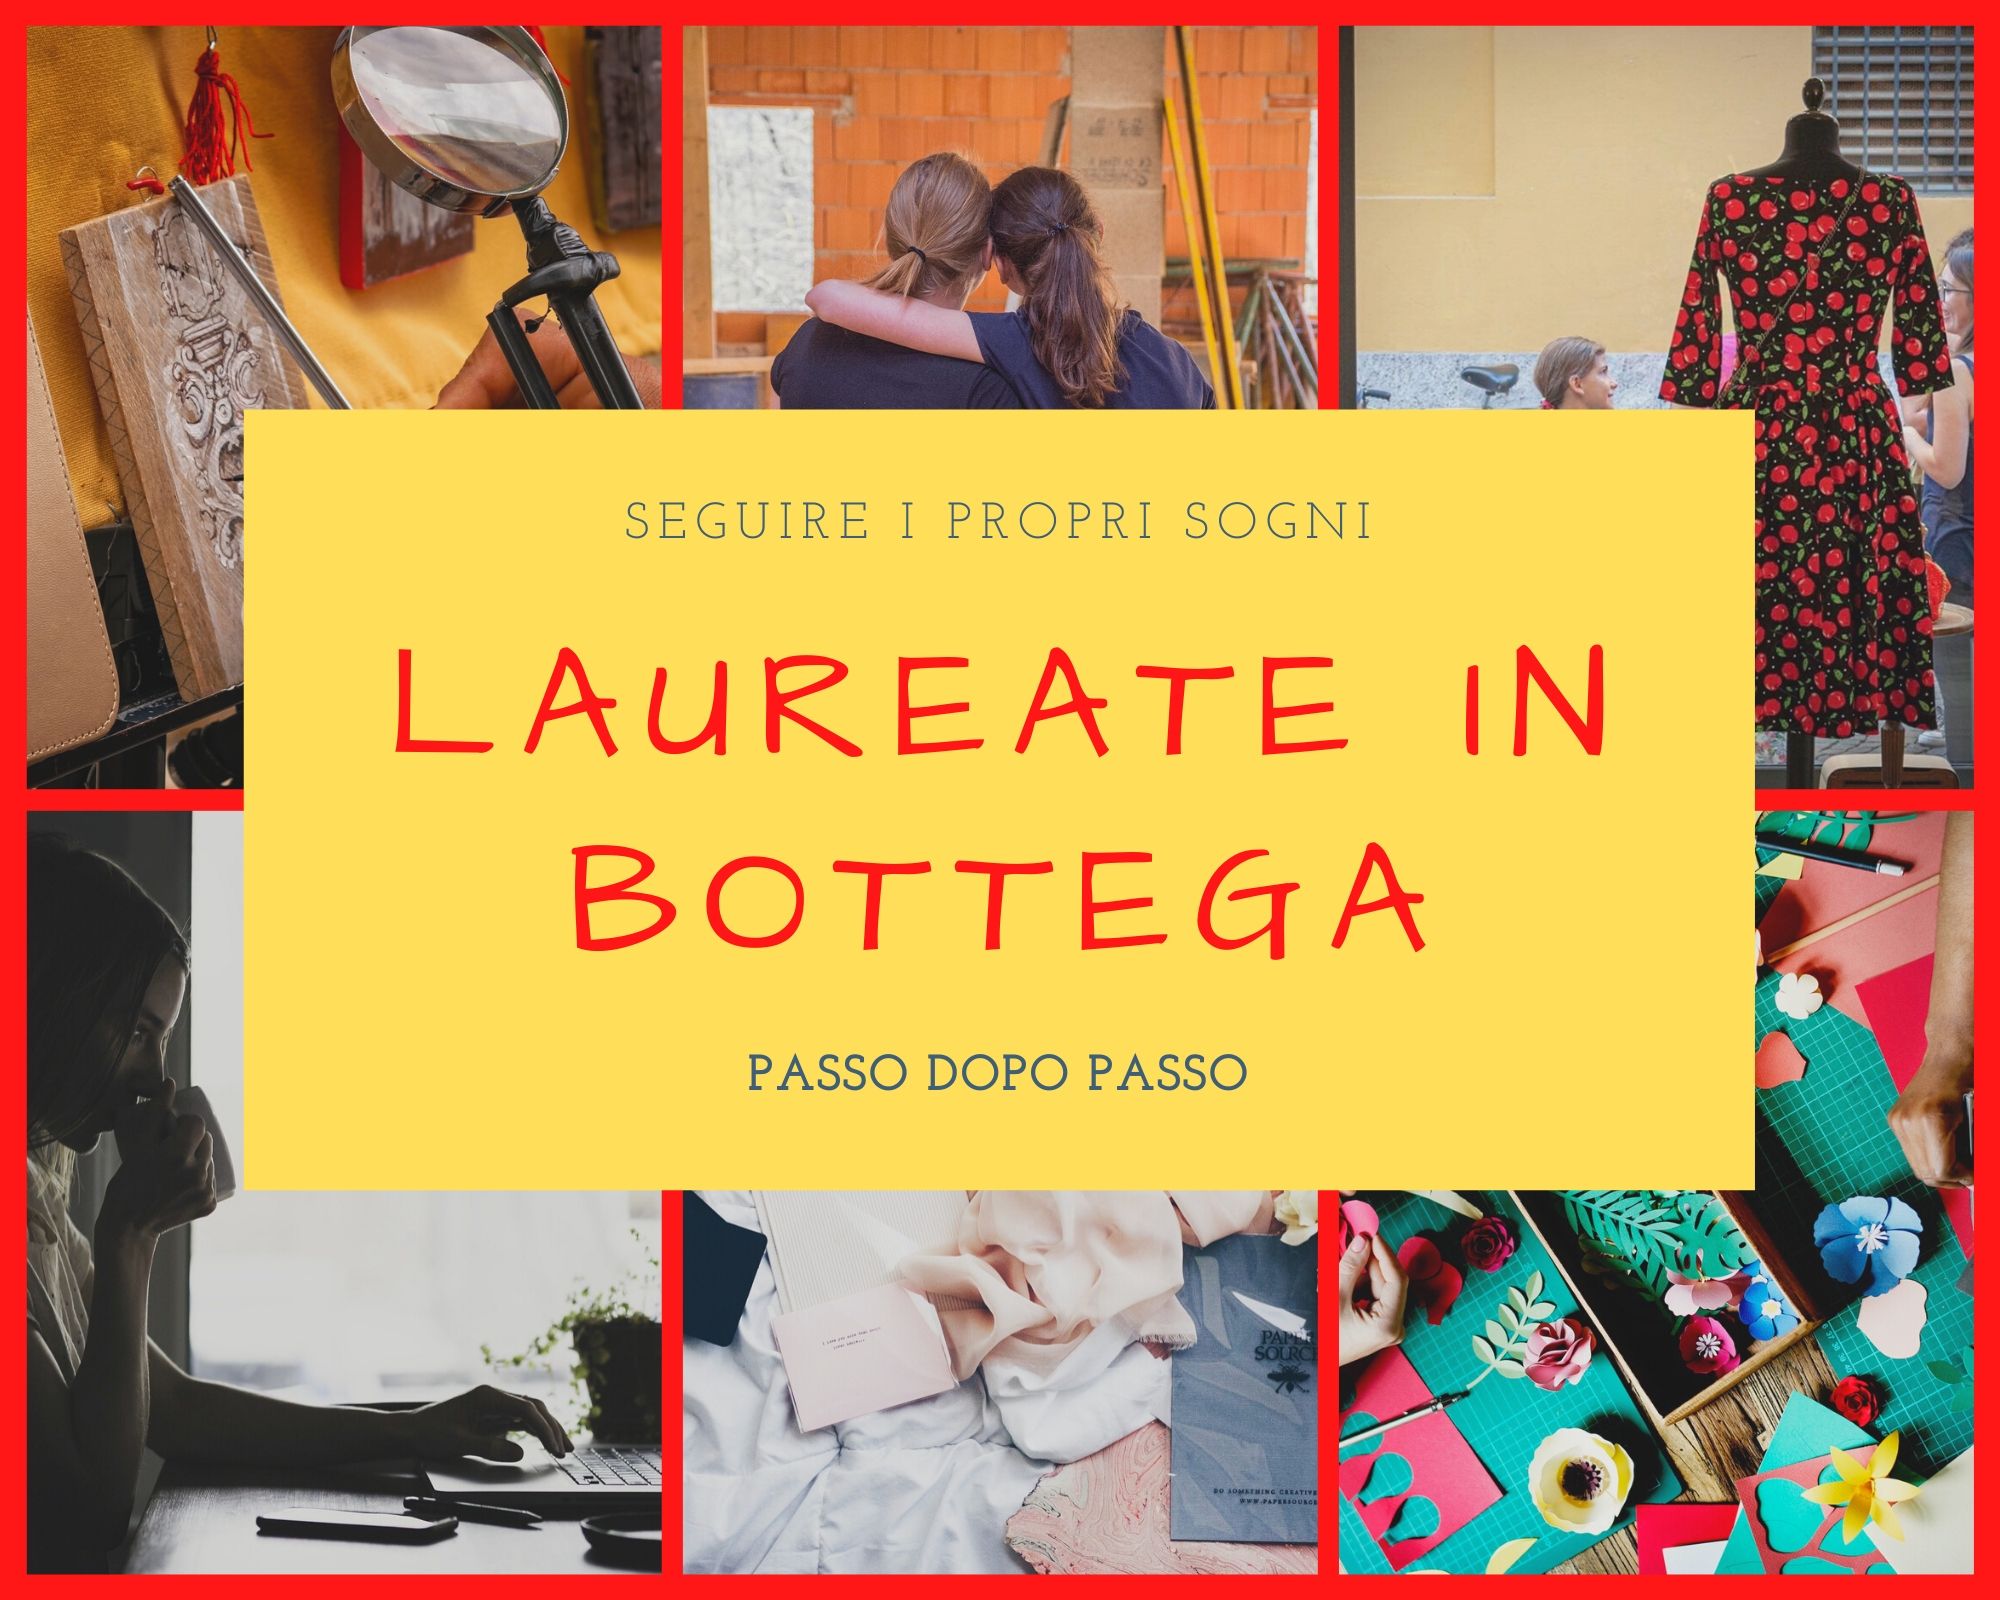 Laureate in bottega è un blog che racconta storie di donne che, forti del proprio coraggio e della propria preparazione, hanno deciso di aprire negozi e botteghe di quartiere.